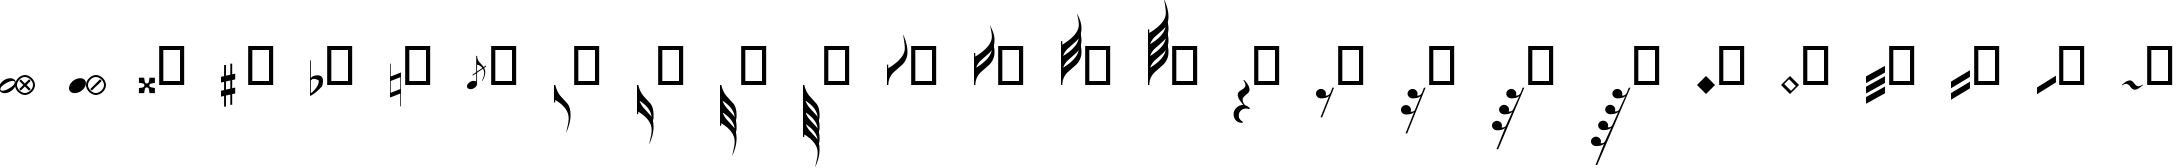 Пример написания английского алфавита шрифтом Guitar Pro